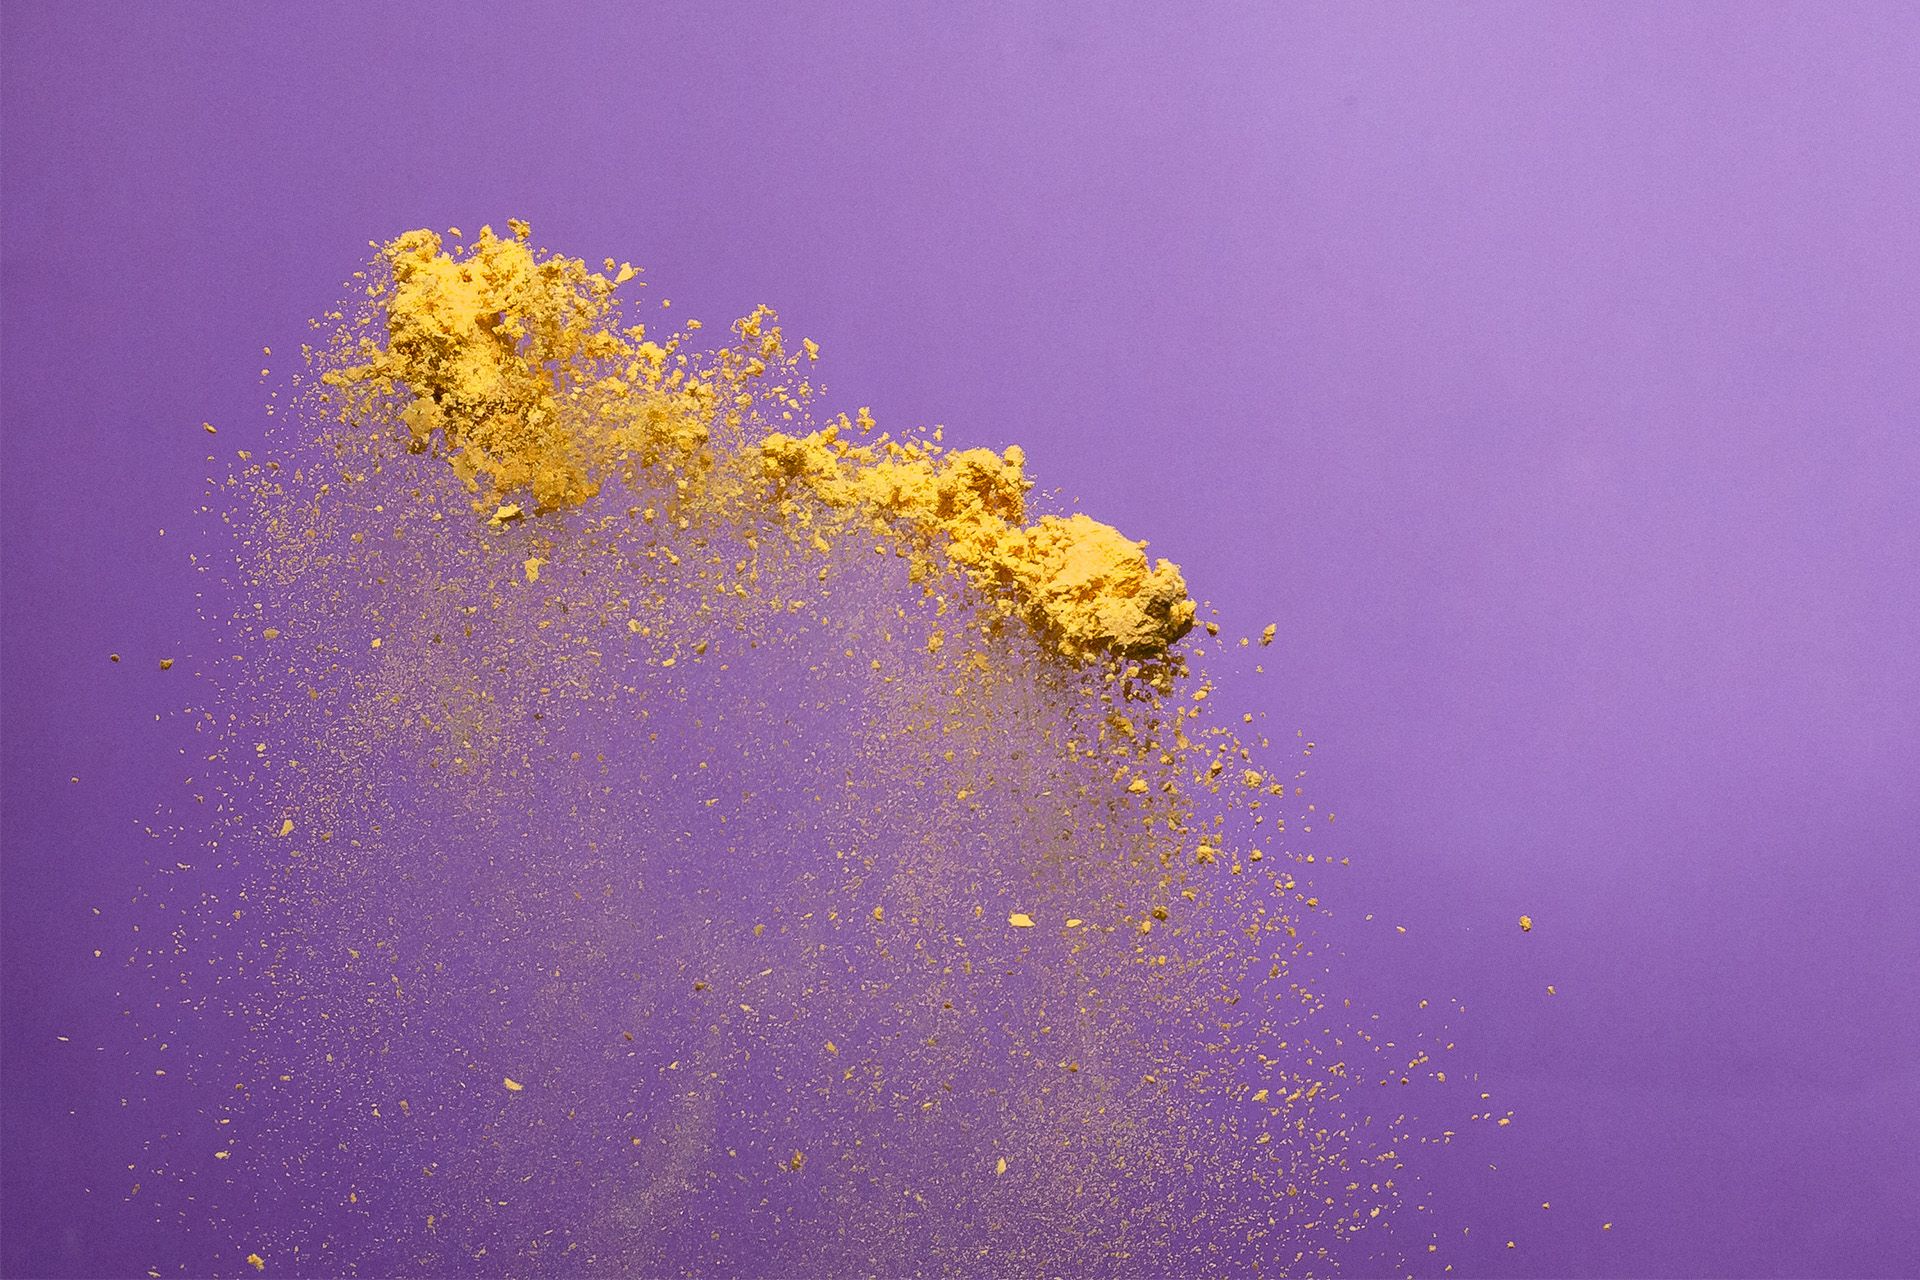 La poudre Solein sur une surface violette.